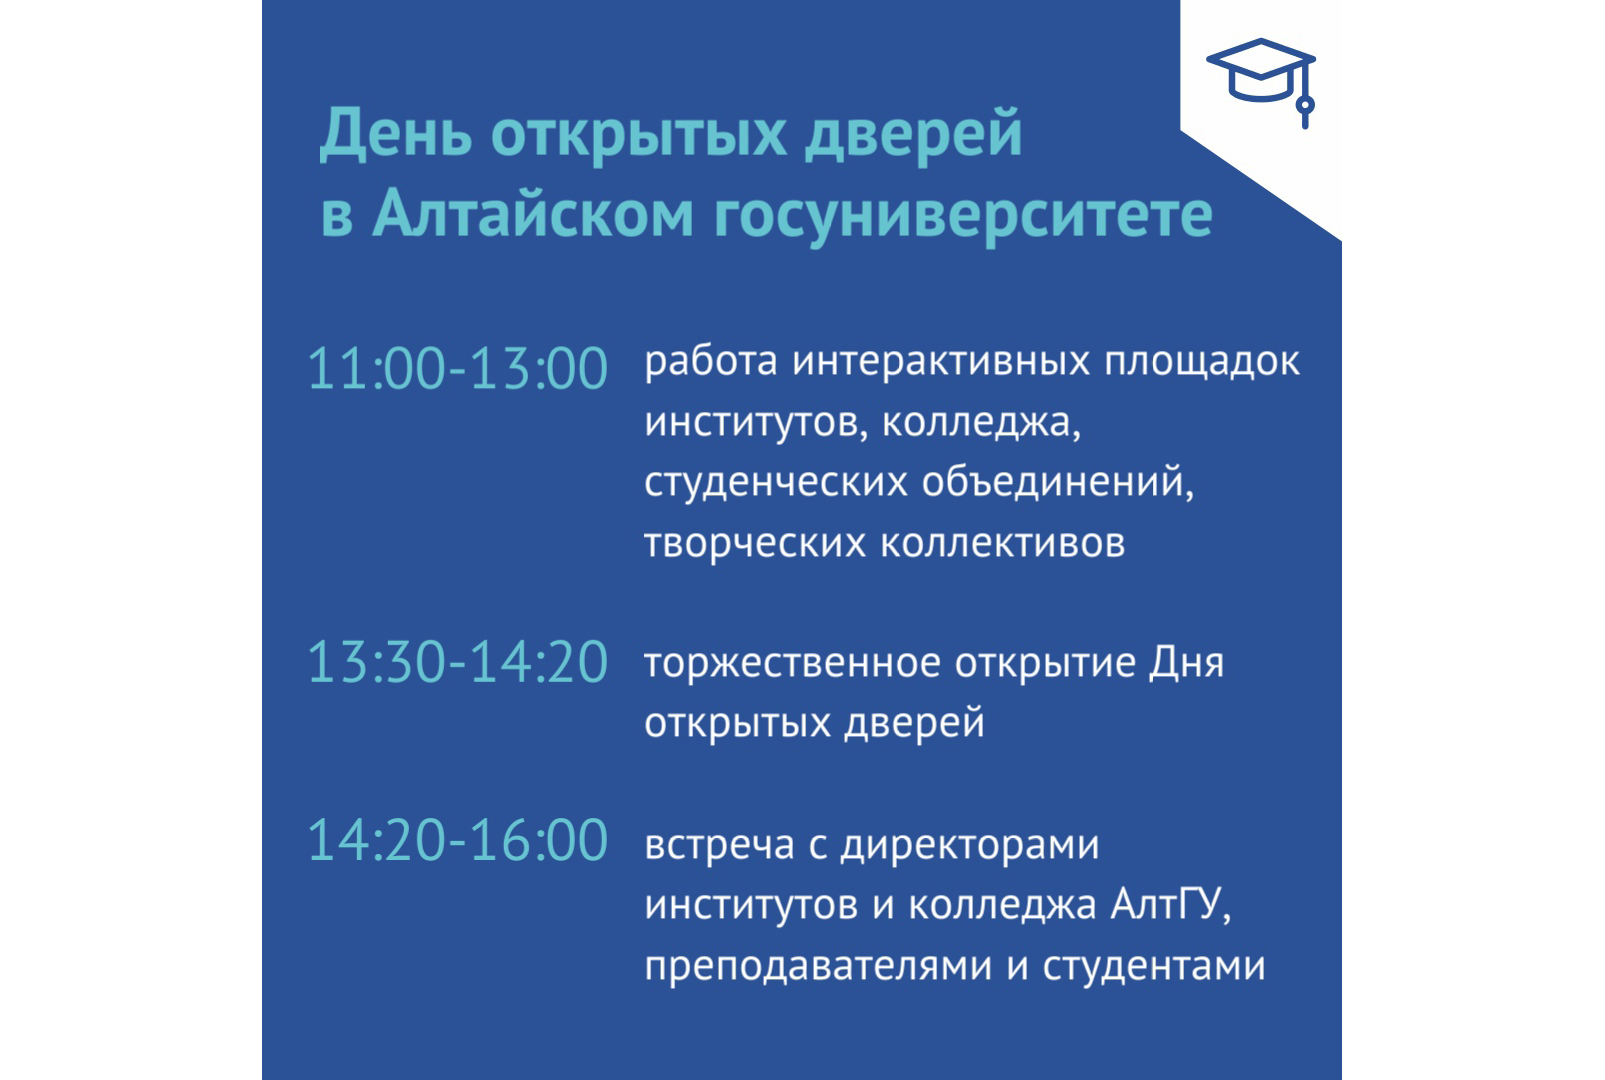 День открытых дверей Алтайского государственного университета.